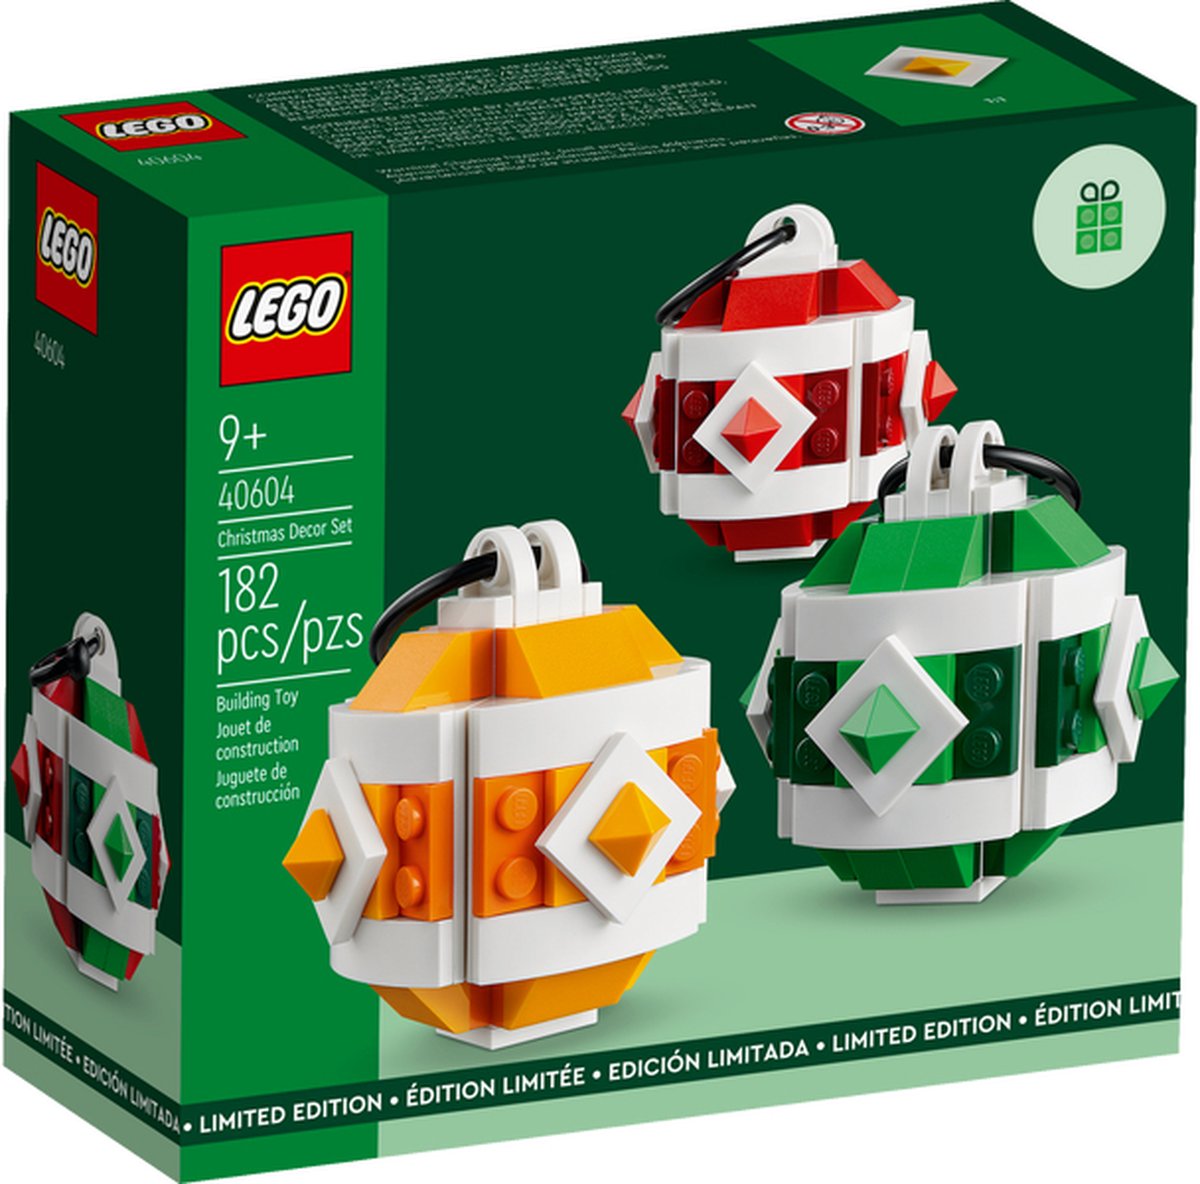 Des boules de Noël LEGO